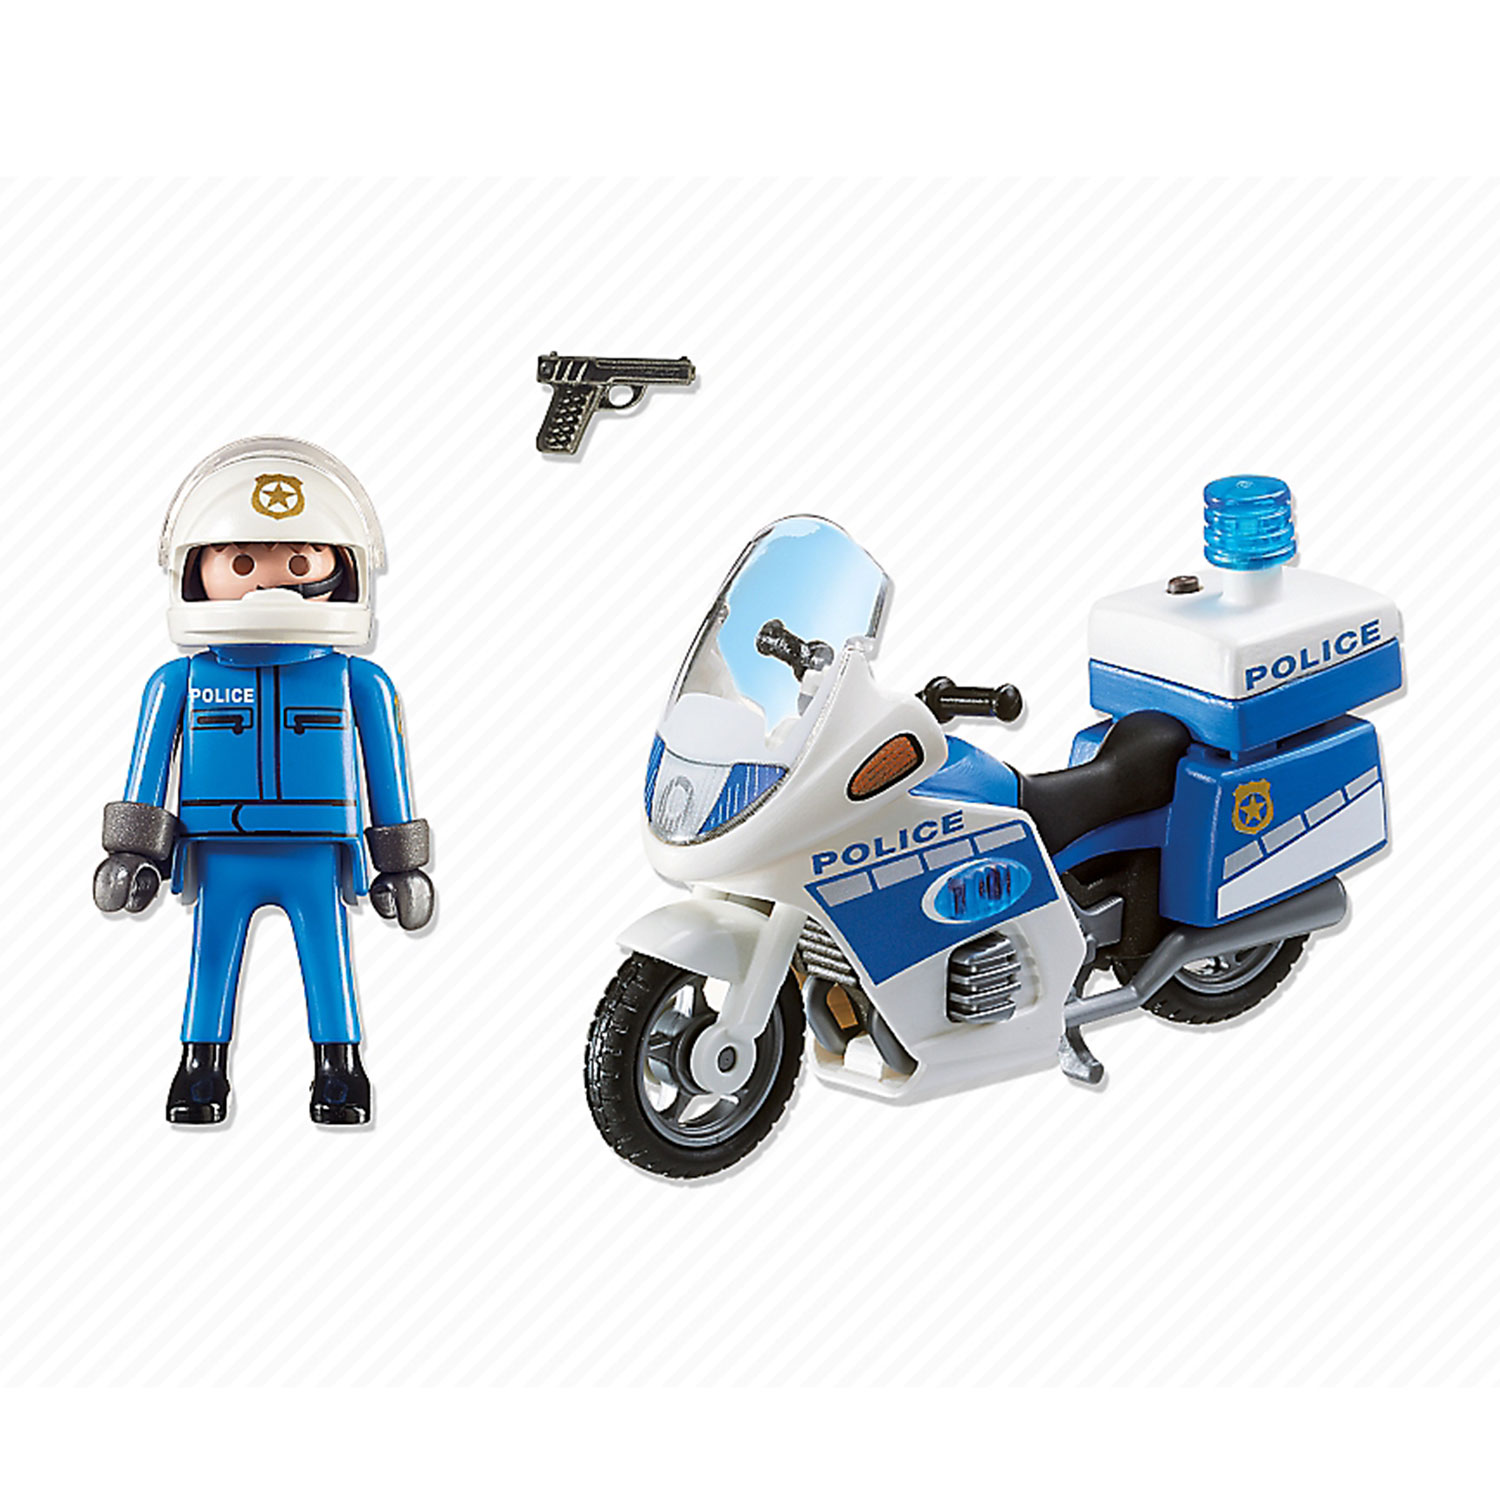 Playmobil Polizeimotorrad Action 6923 Lichter City Action Police Polizei NEU OVP 